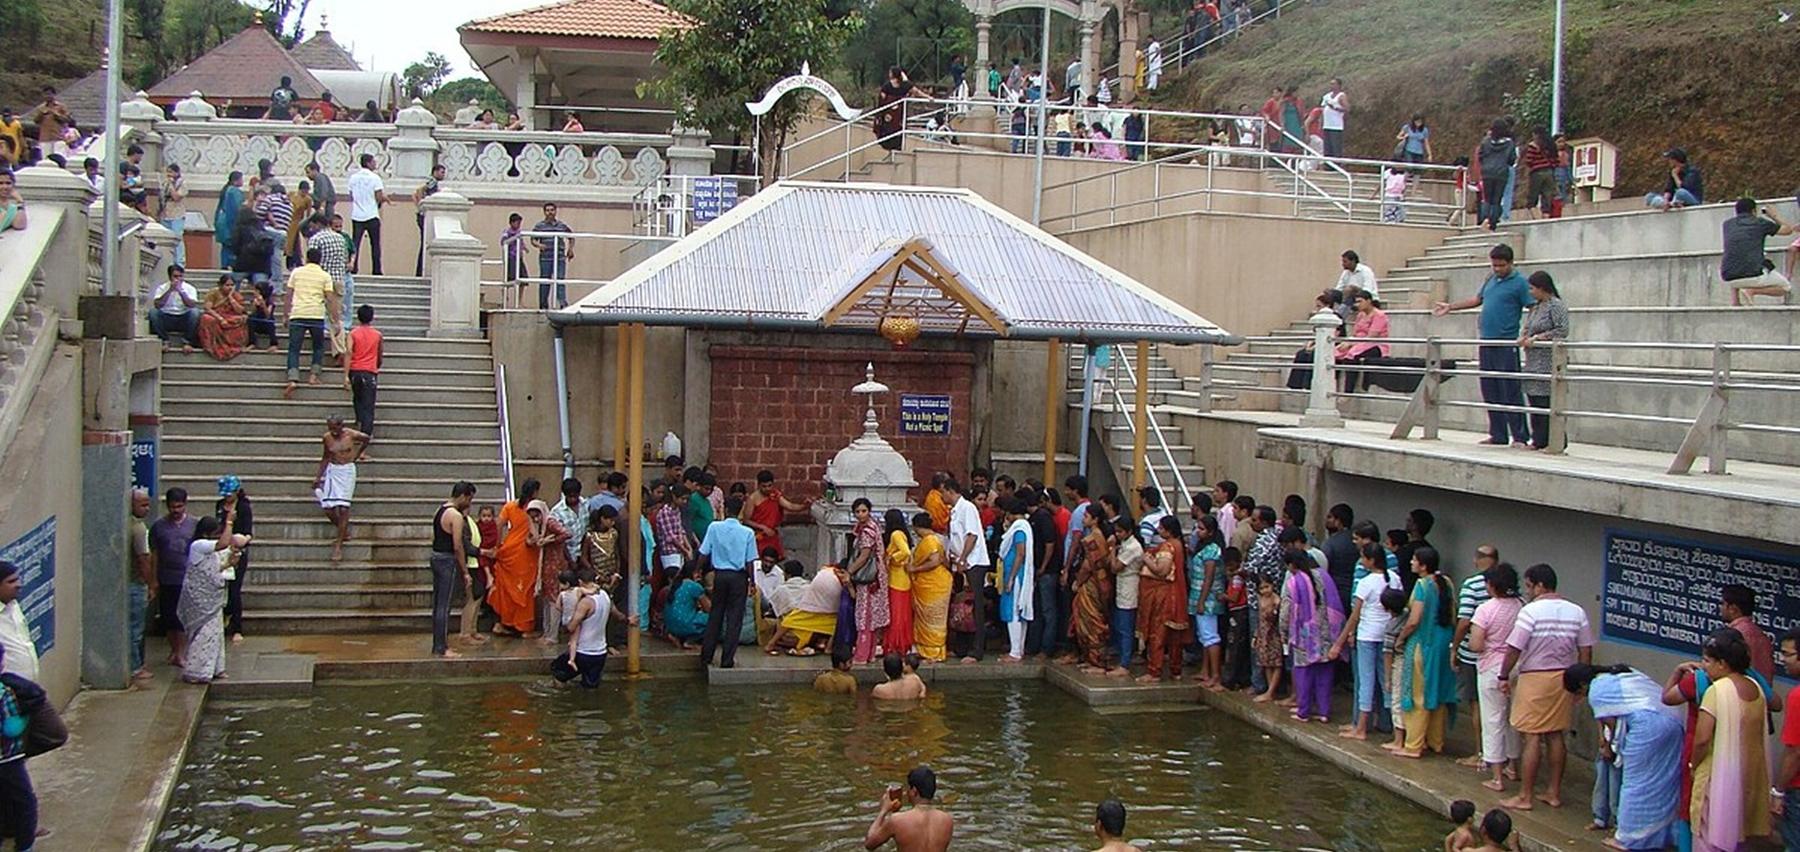 Talakaveri Temple